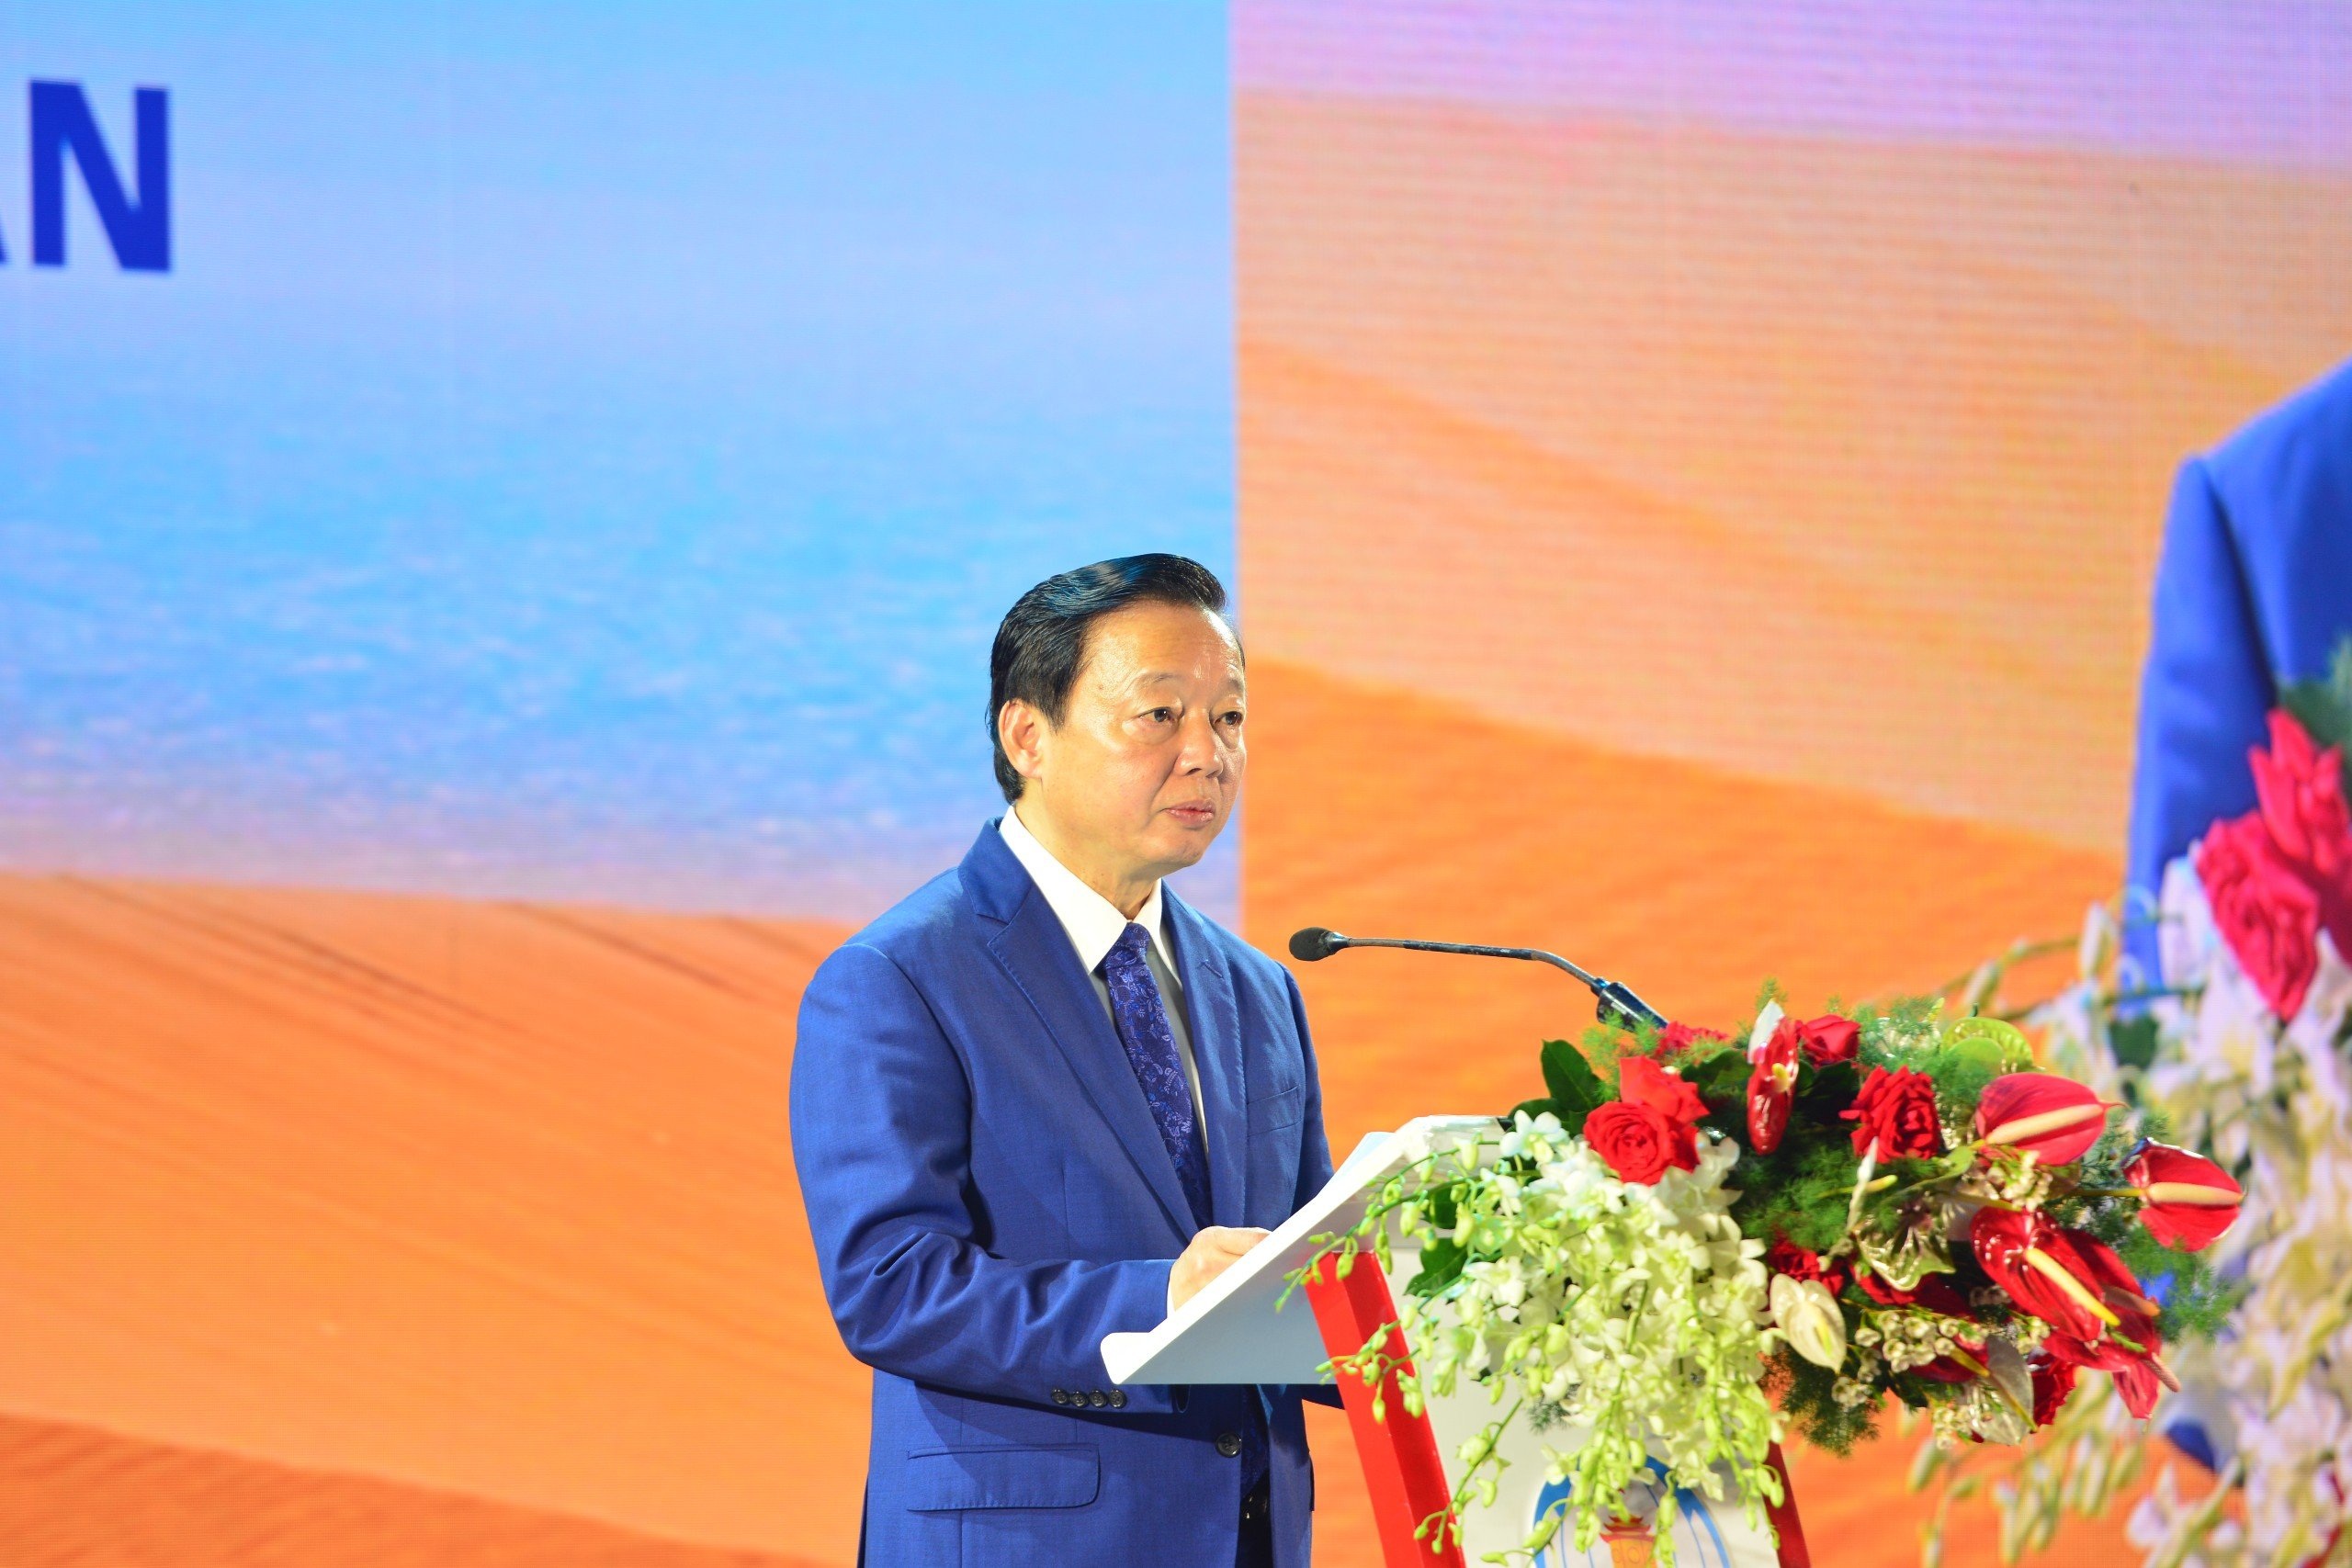 Bình Thuận hướng đến phát triển du lịch, năng lượng sạch mang tầm quốc tế - 2